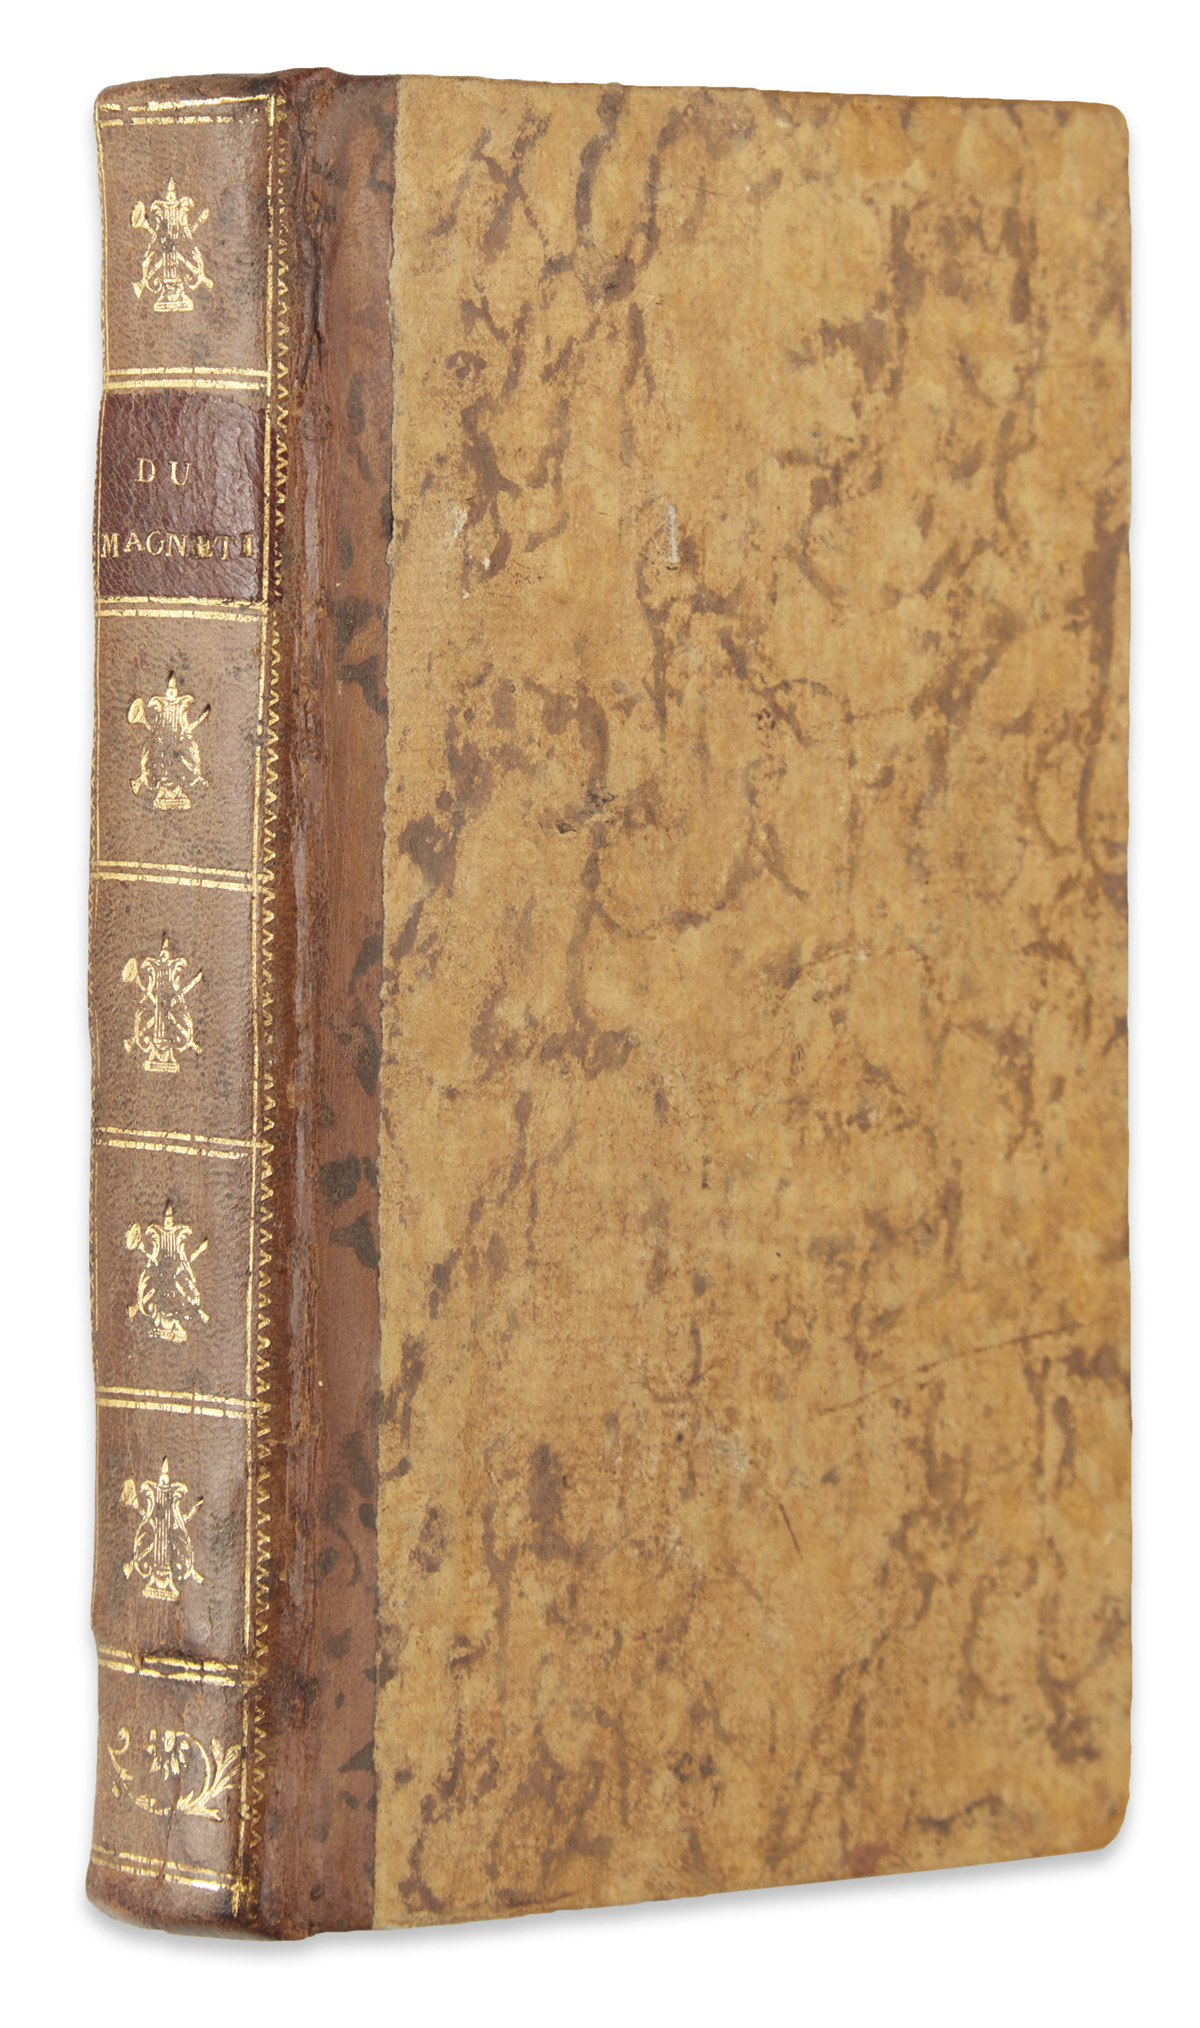 ANIMAL MAGNETISM.  Mesmer, Franz Anton. Mémoire sur la Découverte du Magnétisme Animal.  1779.  Bound with 2 other works.